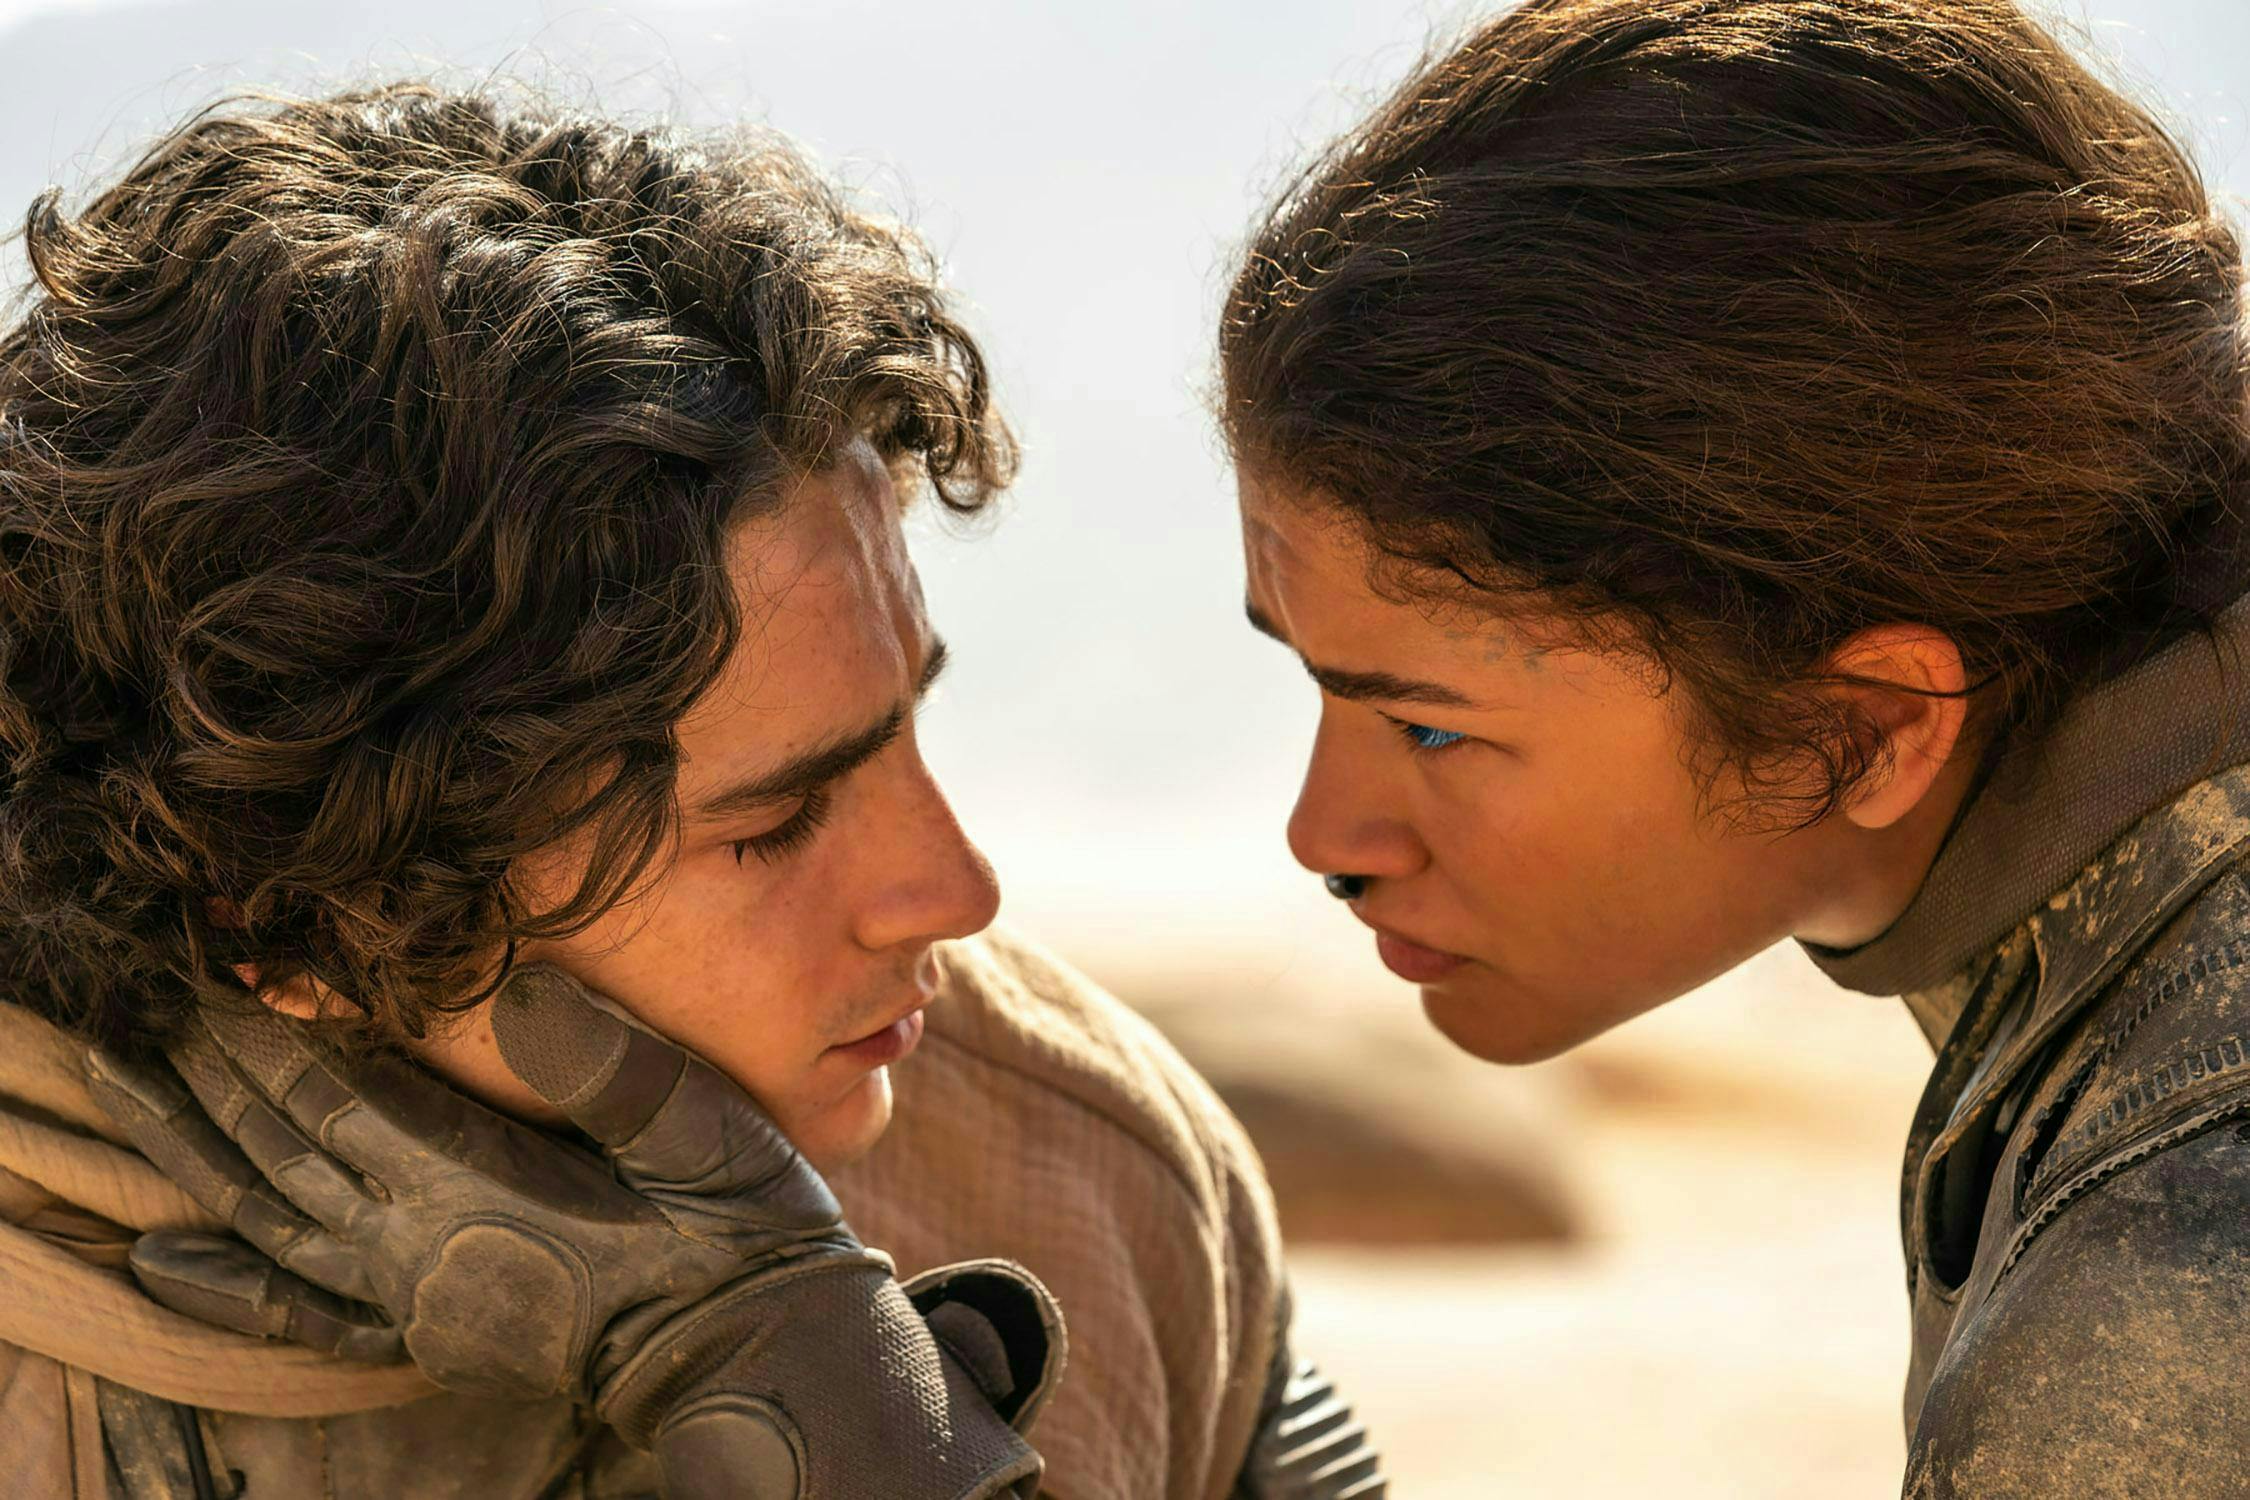 Timothee Chalamet and Zendaya in Dune Part 2 Trailer